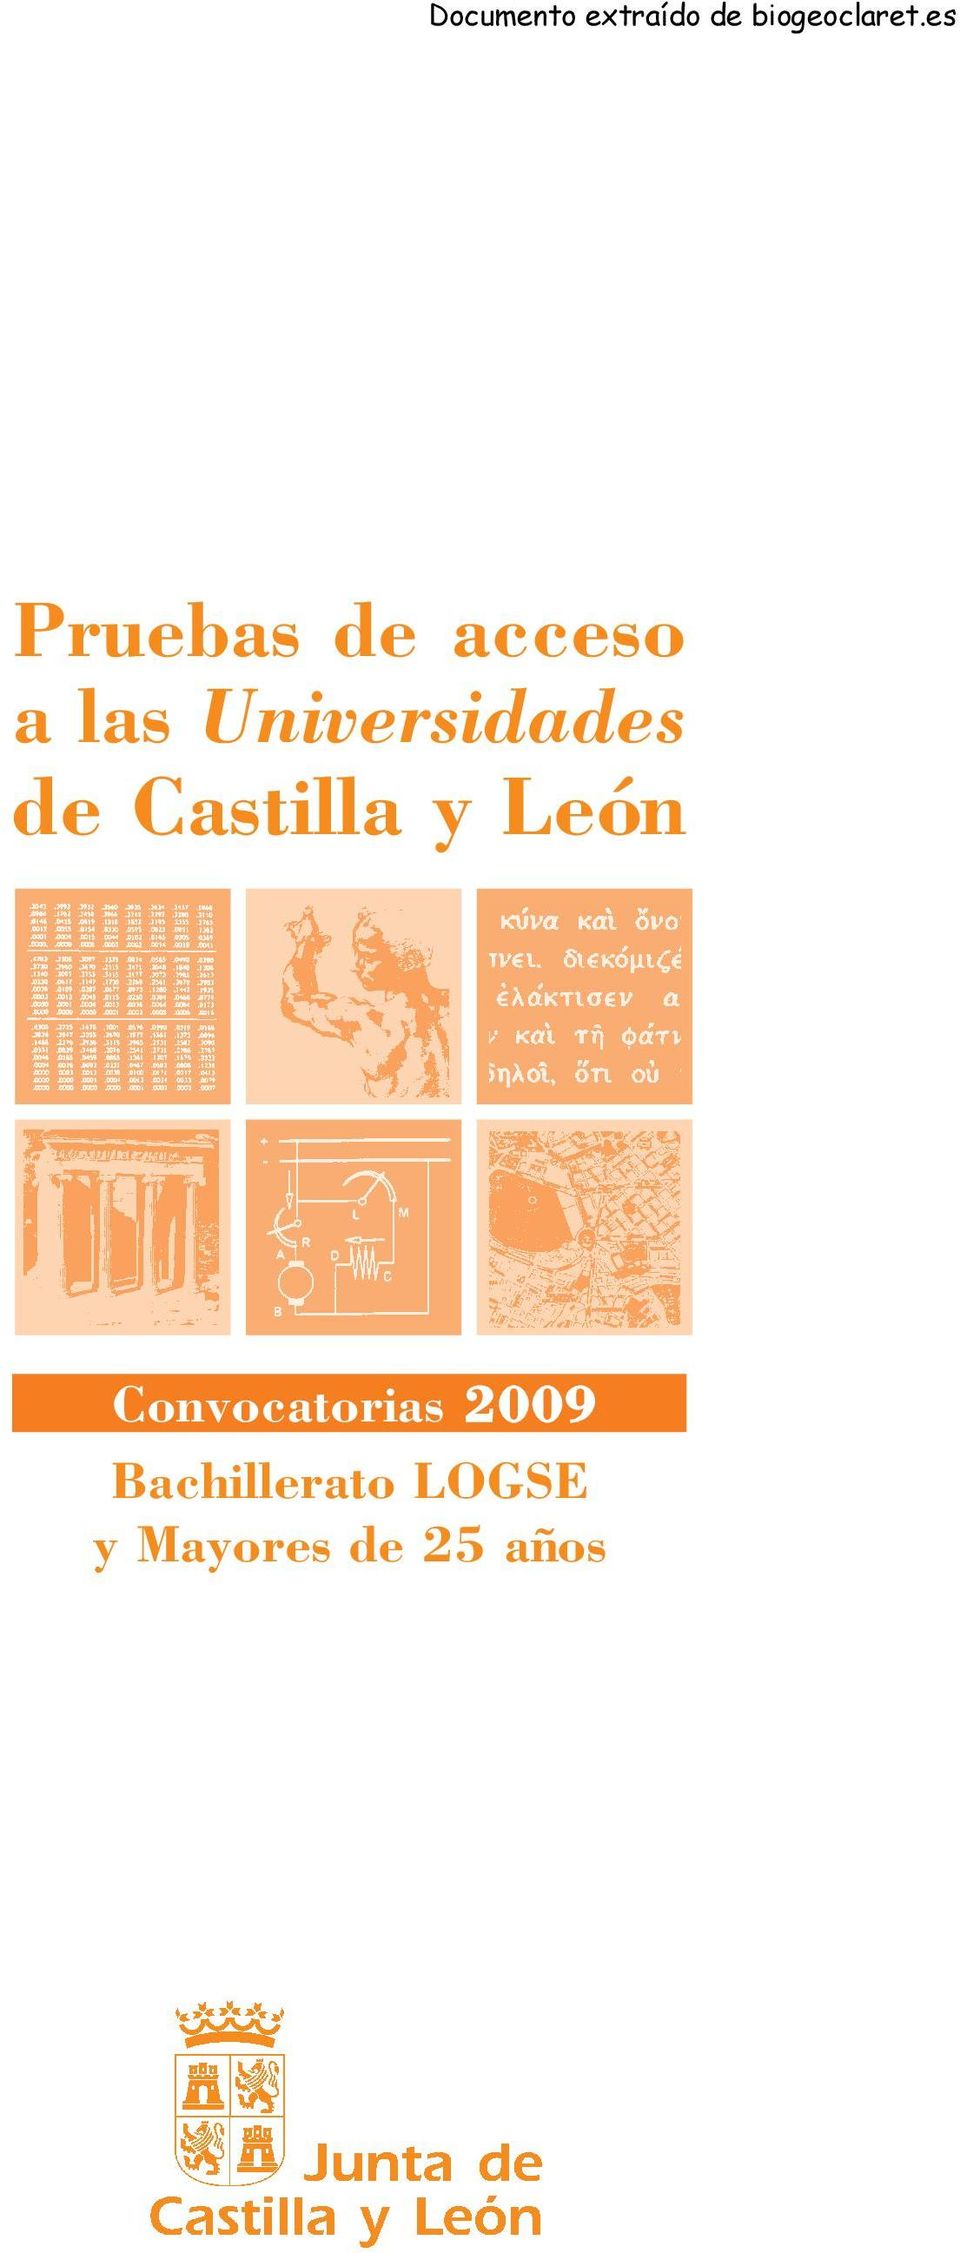 León Convocatorias 2009